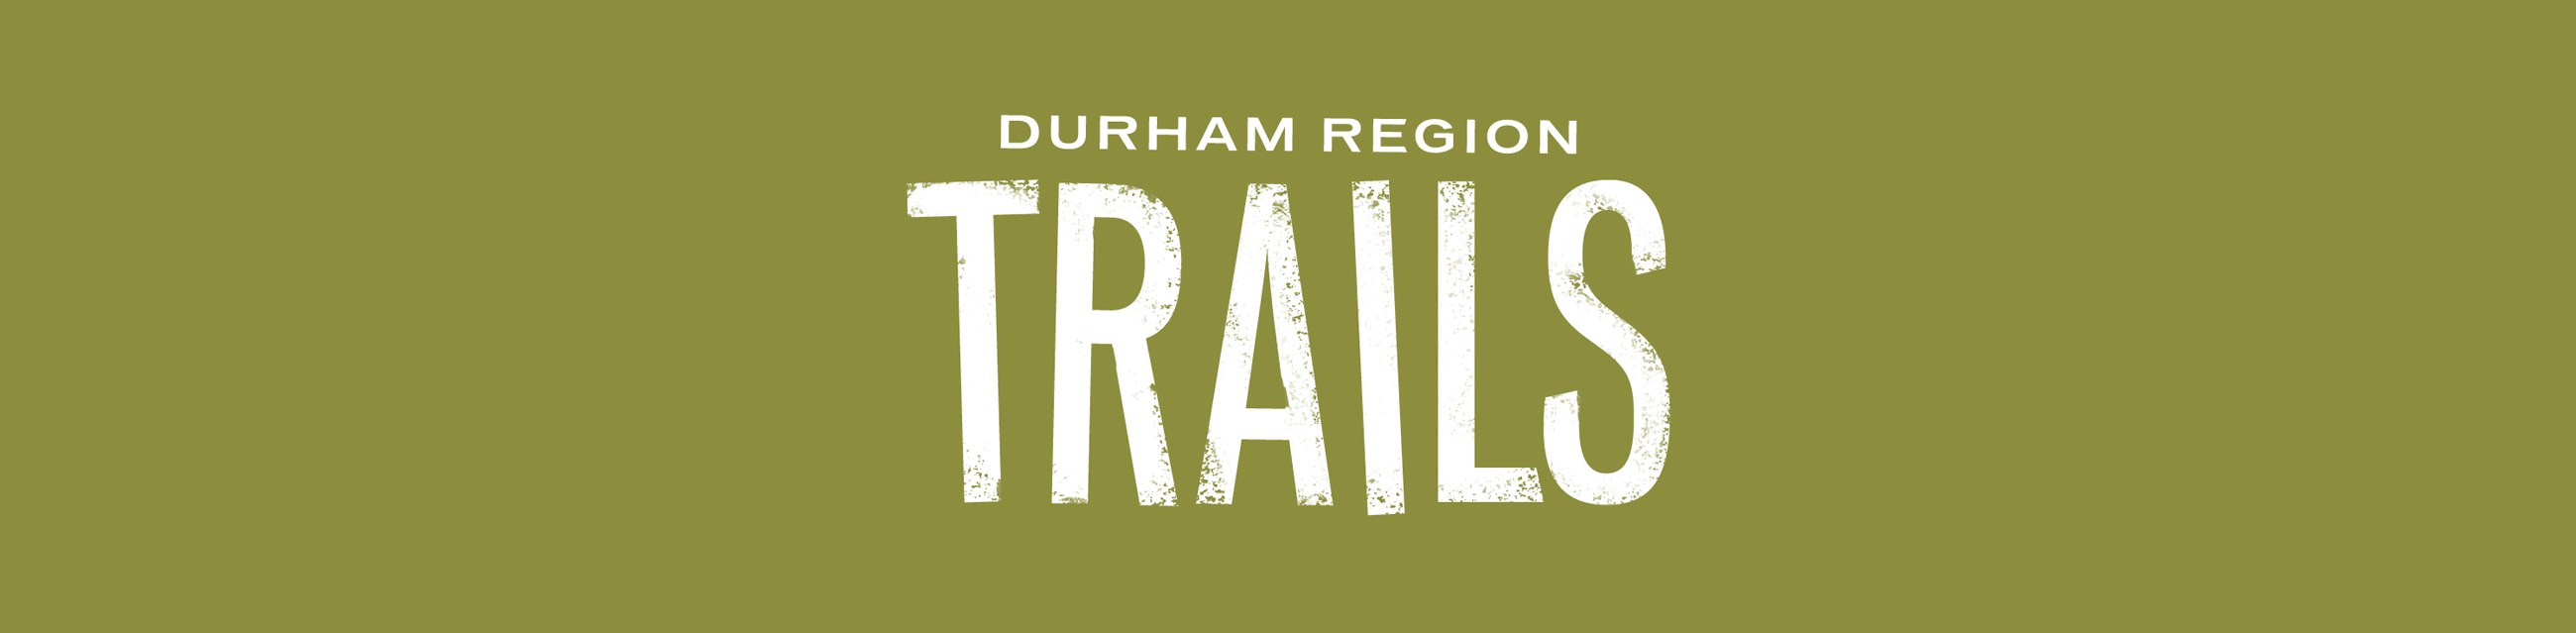 Durham Region Trails wordmark